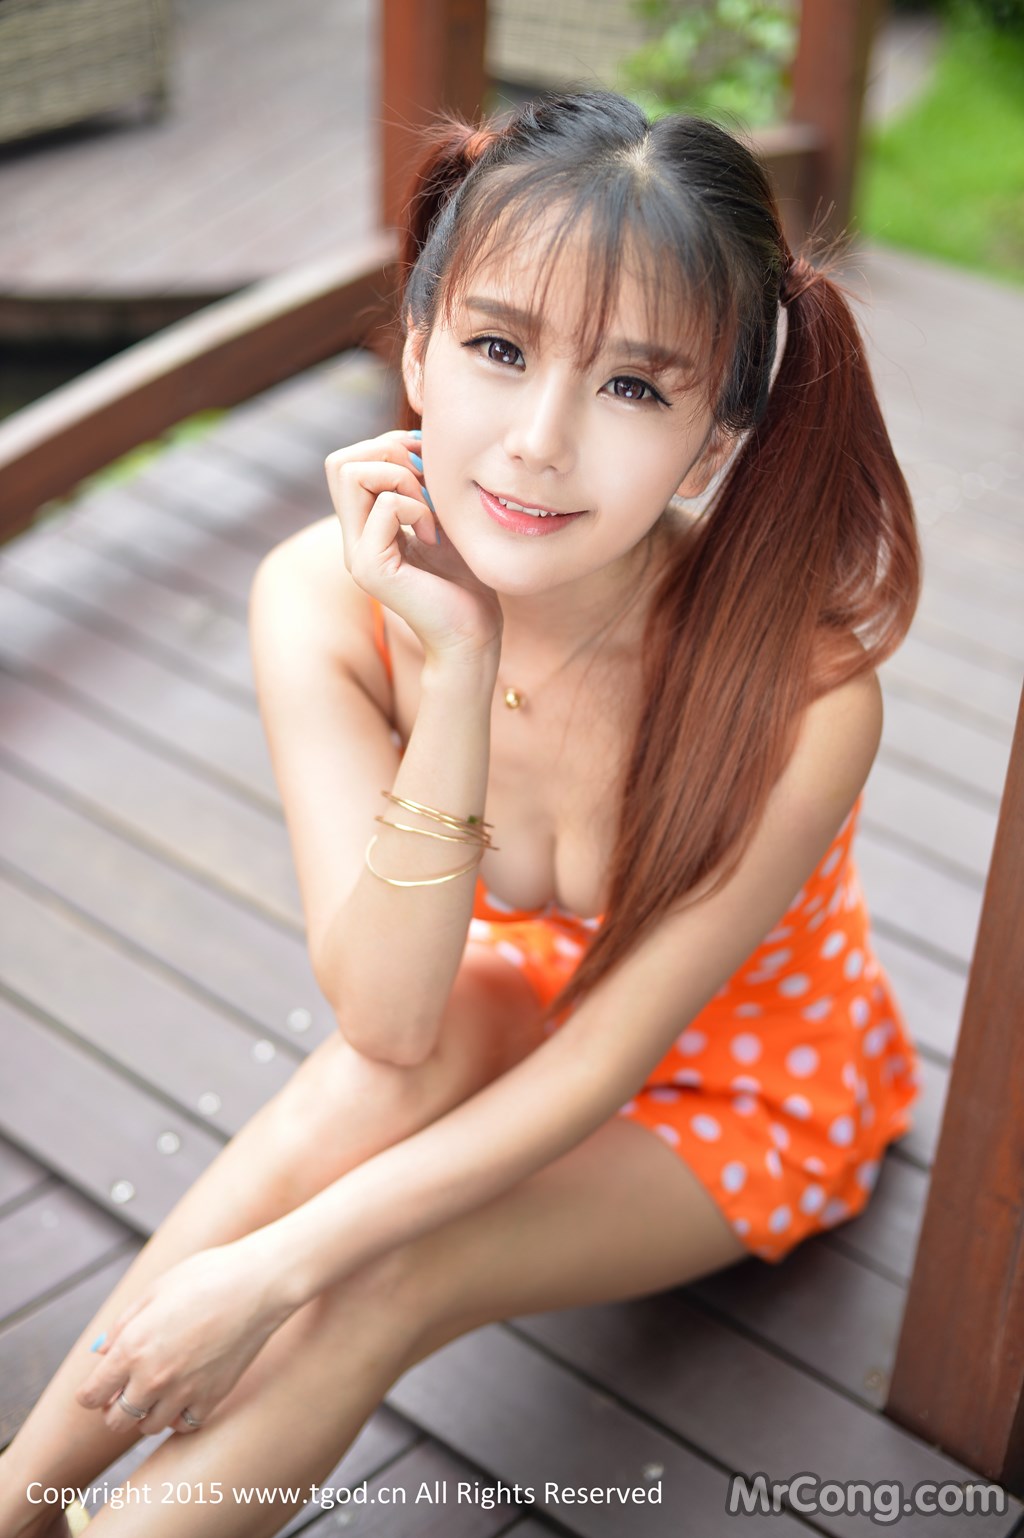 TGOD 2015-07-08: Model Xiao Jiu Vin (小 九 Vin) (42 photos)